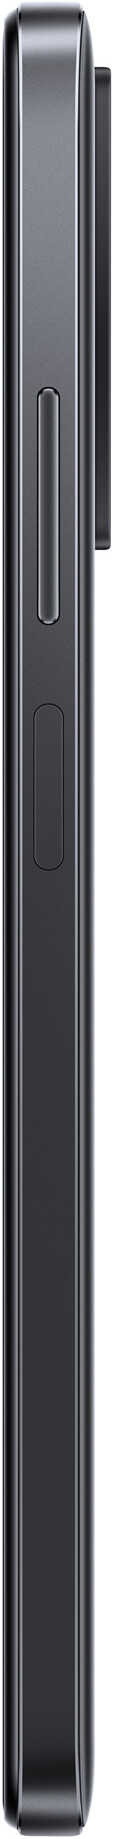 Xiaomi Redmi Note 11 64GB (4GB RAM)